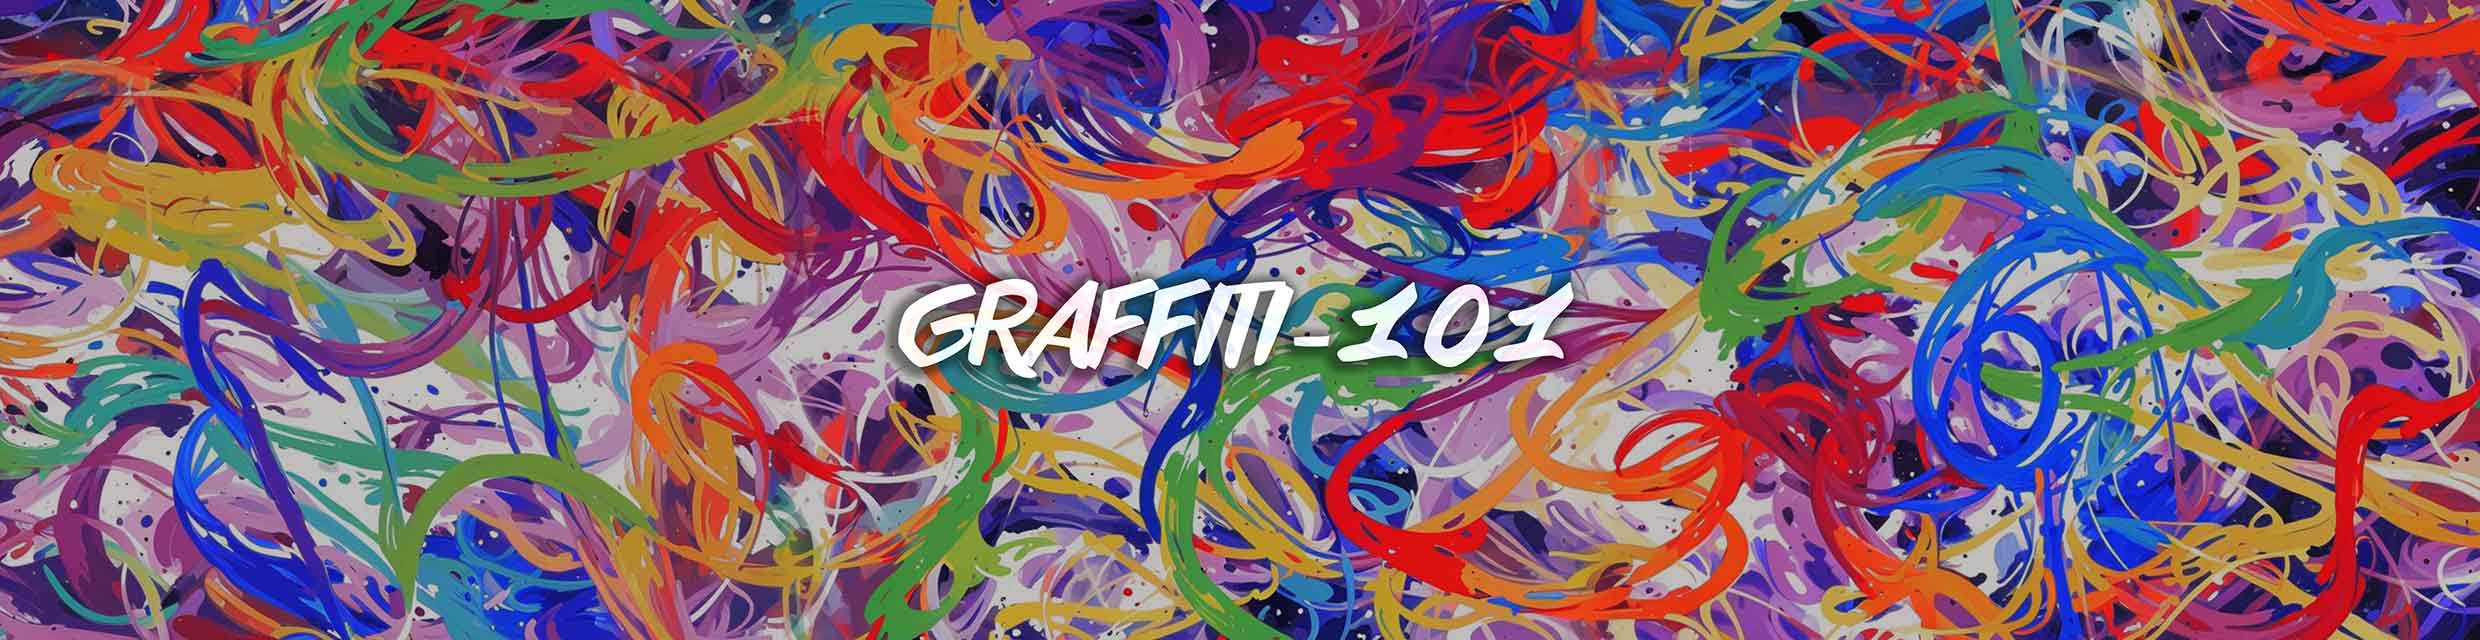 Graffiti 101 - Art Club Apparel